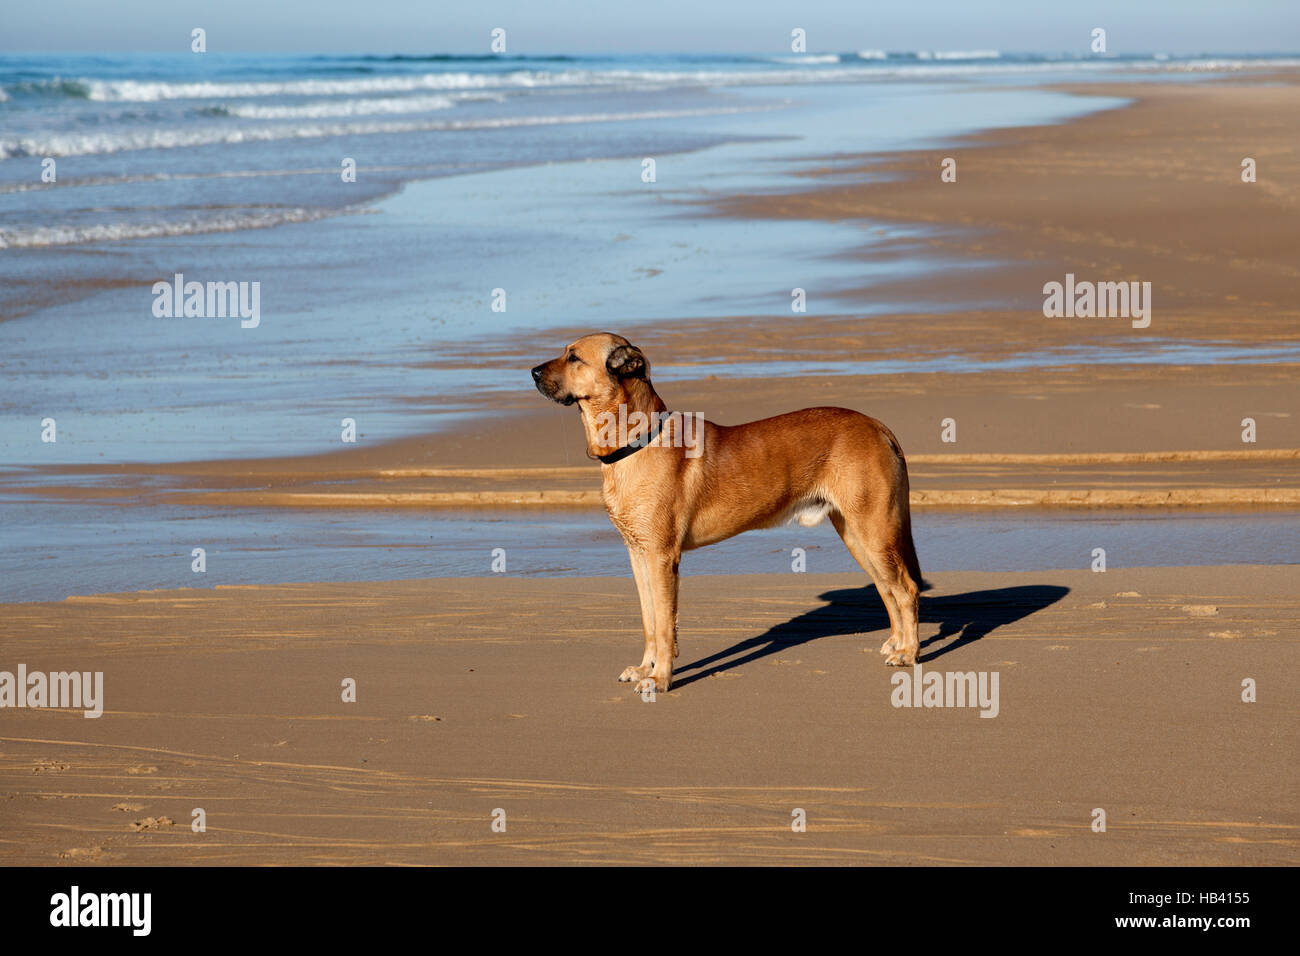 Un fedele cane in attesa del suo master sulla spiaggia: un surfista formazione presso il mare (Hossegor - Francia). Chien fidèle attendant figlio maître sur la plage: Foto Stock